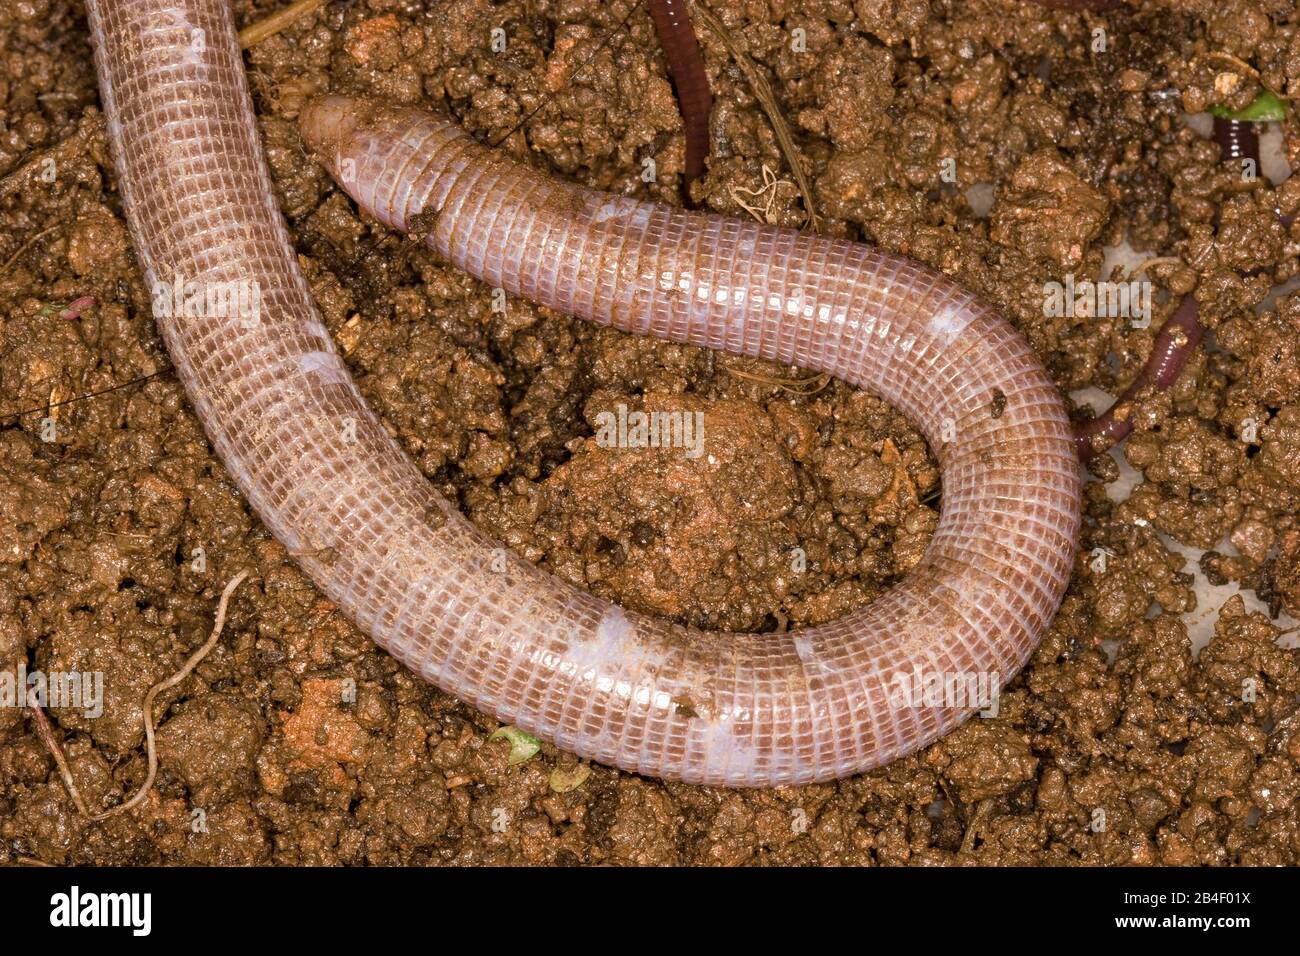 Cobra-de-duas-cabeças,  Snake-of-two-heads, amphisbaena vermicularis, São Paulo, Brazil Stock Photo